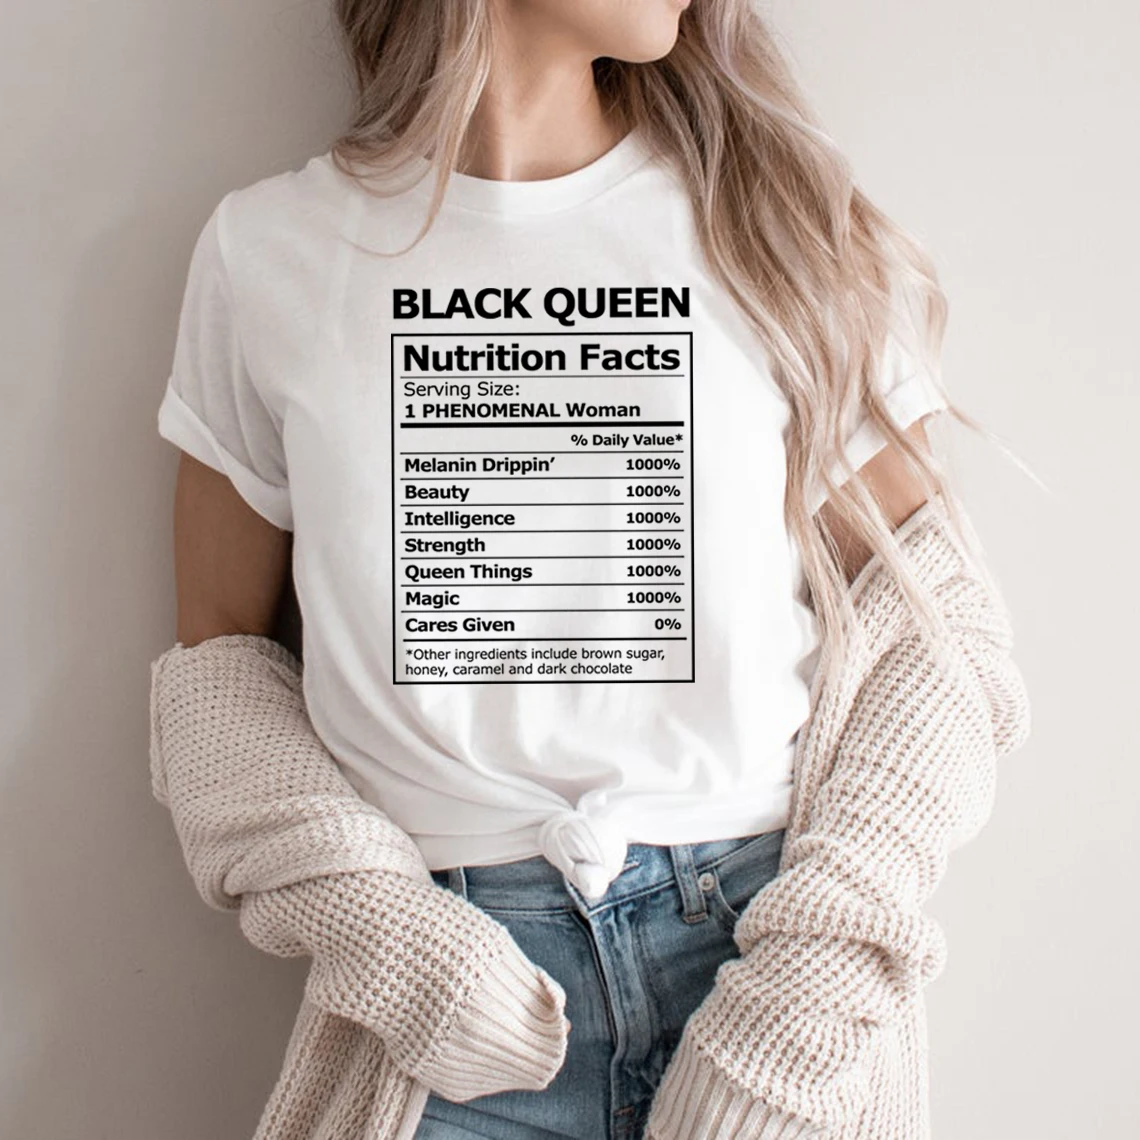 

Черная волшебная рубашка для девушек, черные женские рубашки, унисекс, Черная Королева, питательные факты, футболки и топы с графическим при...